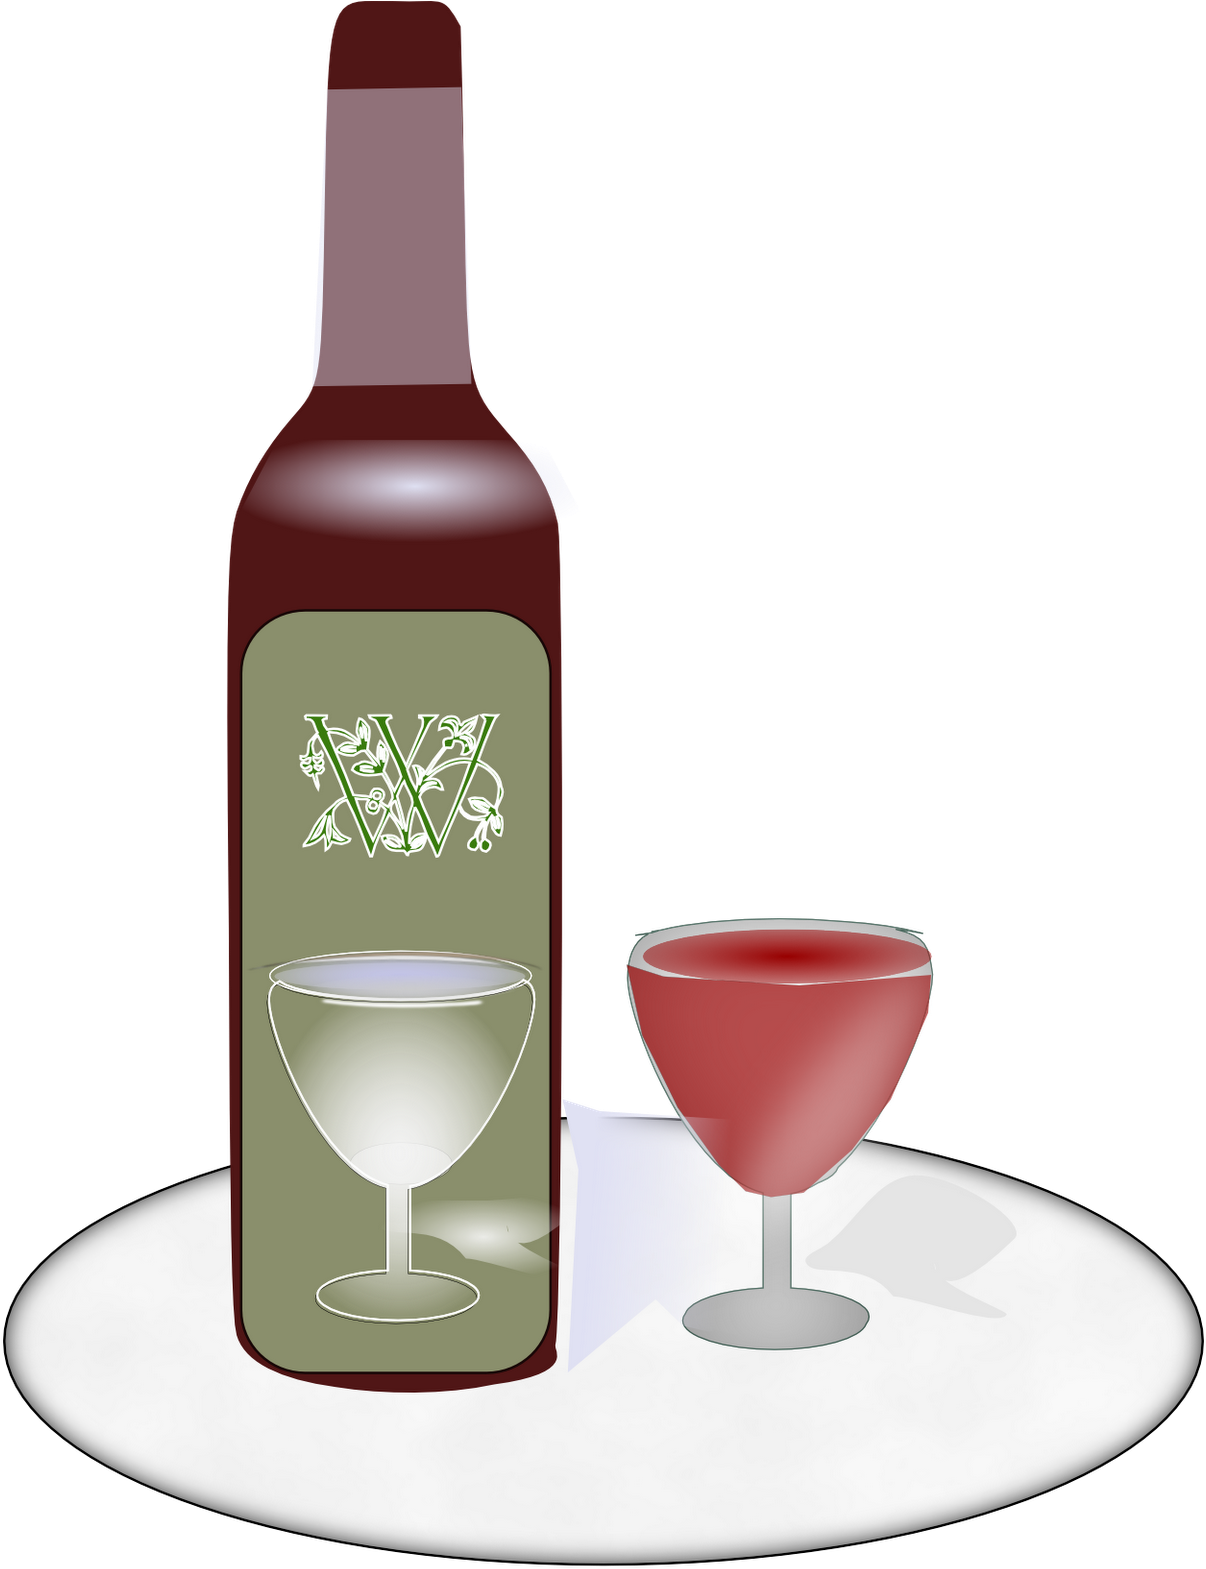 Wine Bottle Inkscape - Wine Glass (1389x1600)